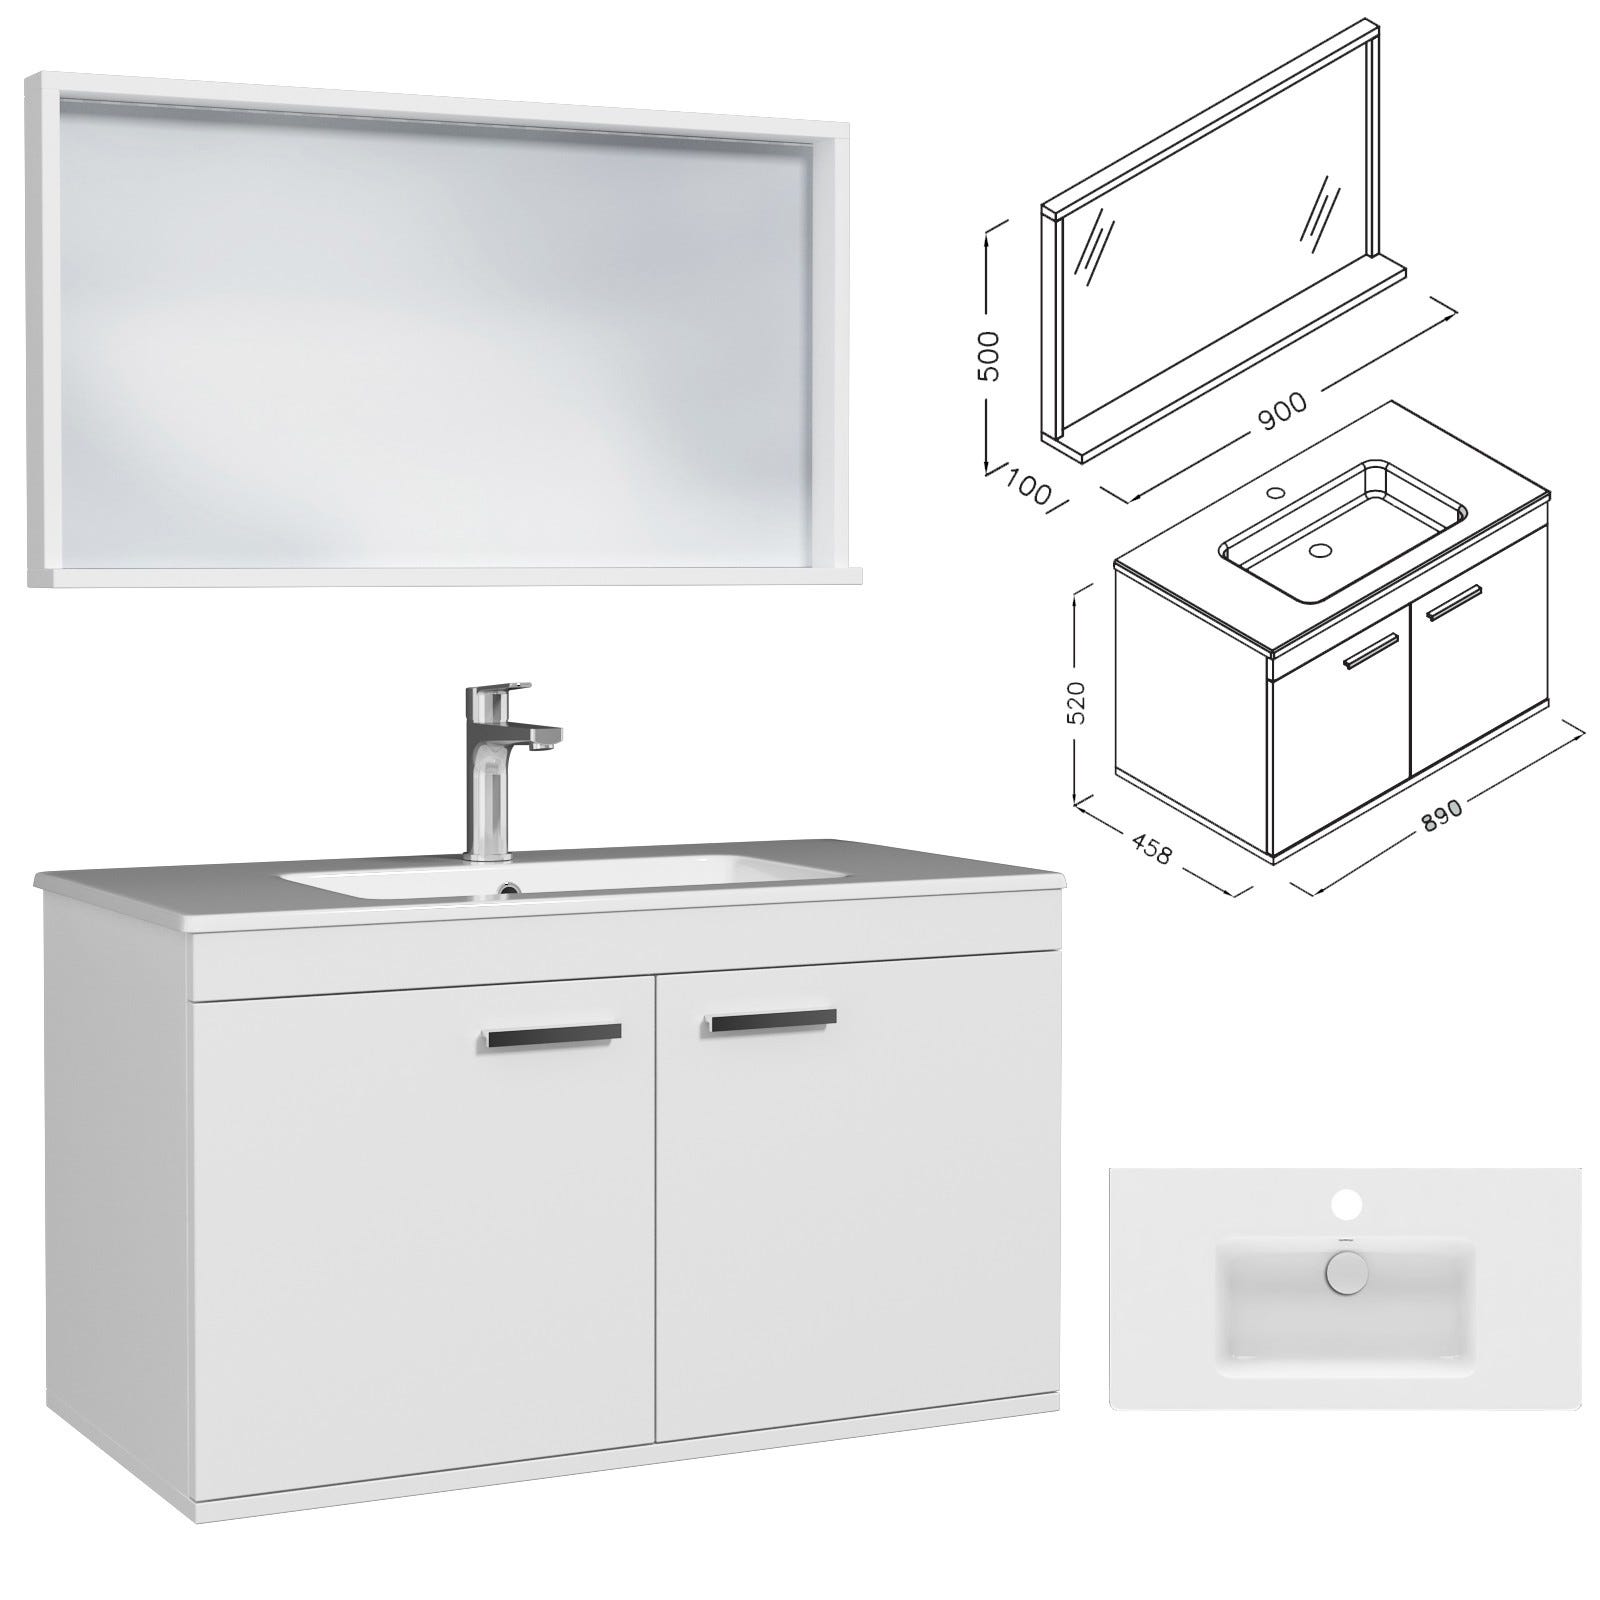 RUBITE Meuble salle de bain simple vasque 2 portes blanc largeur 90 cm + miroir cadre 2